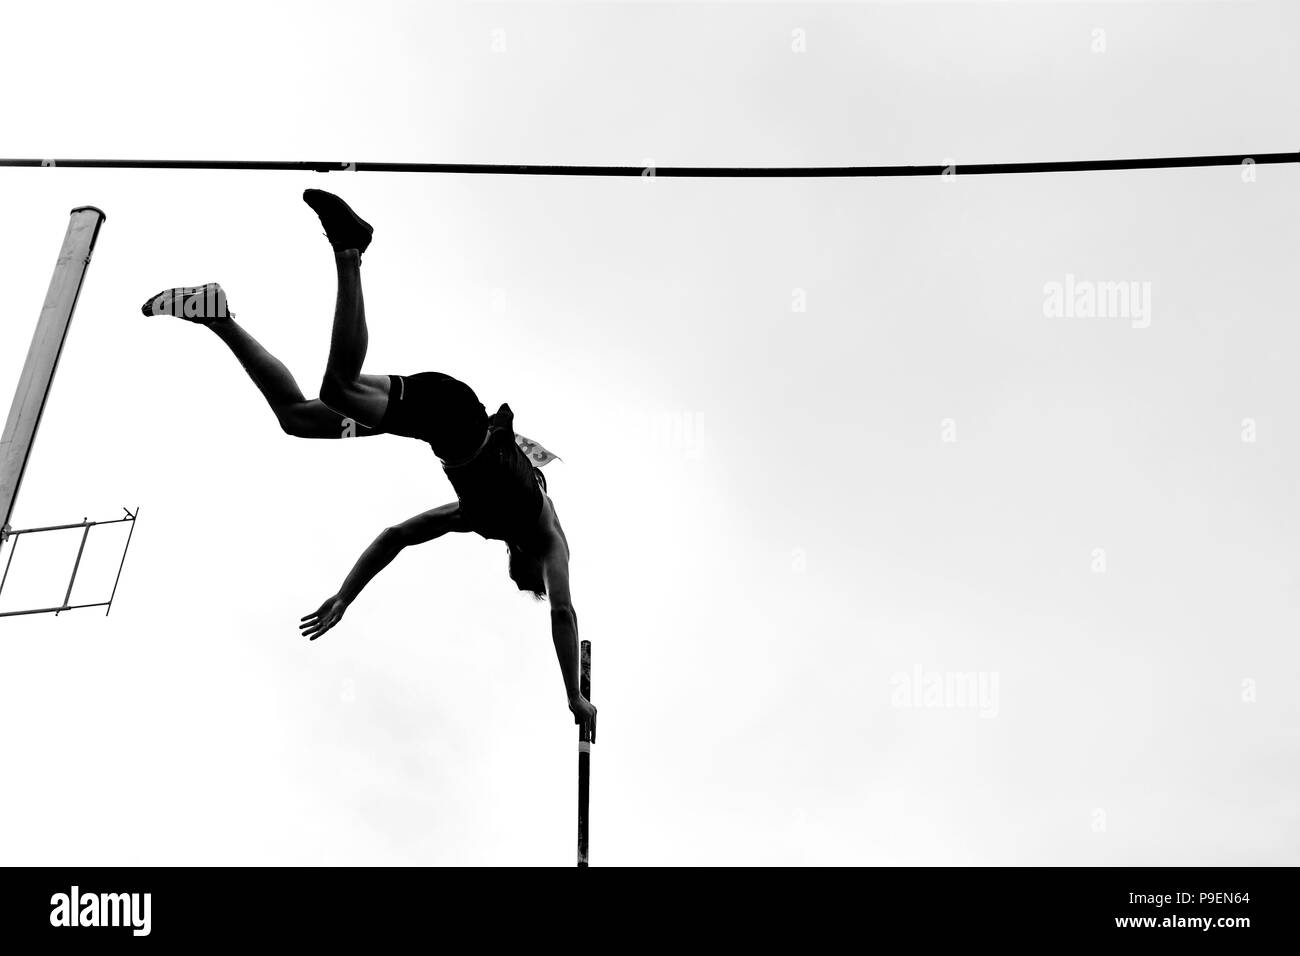 Stabhochsprung Athlet pole vaulter Sprung in der Athletik Schwarz/Weiß-Bild Stockfoto